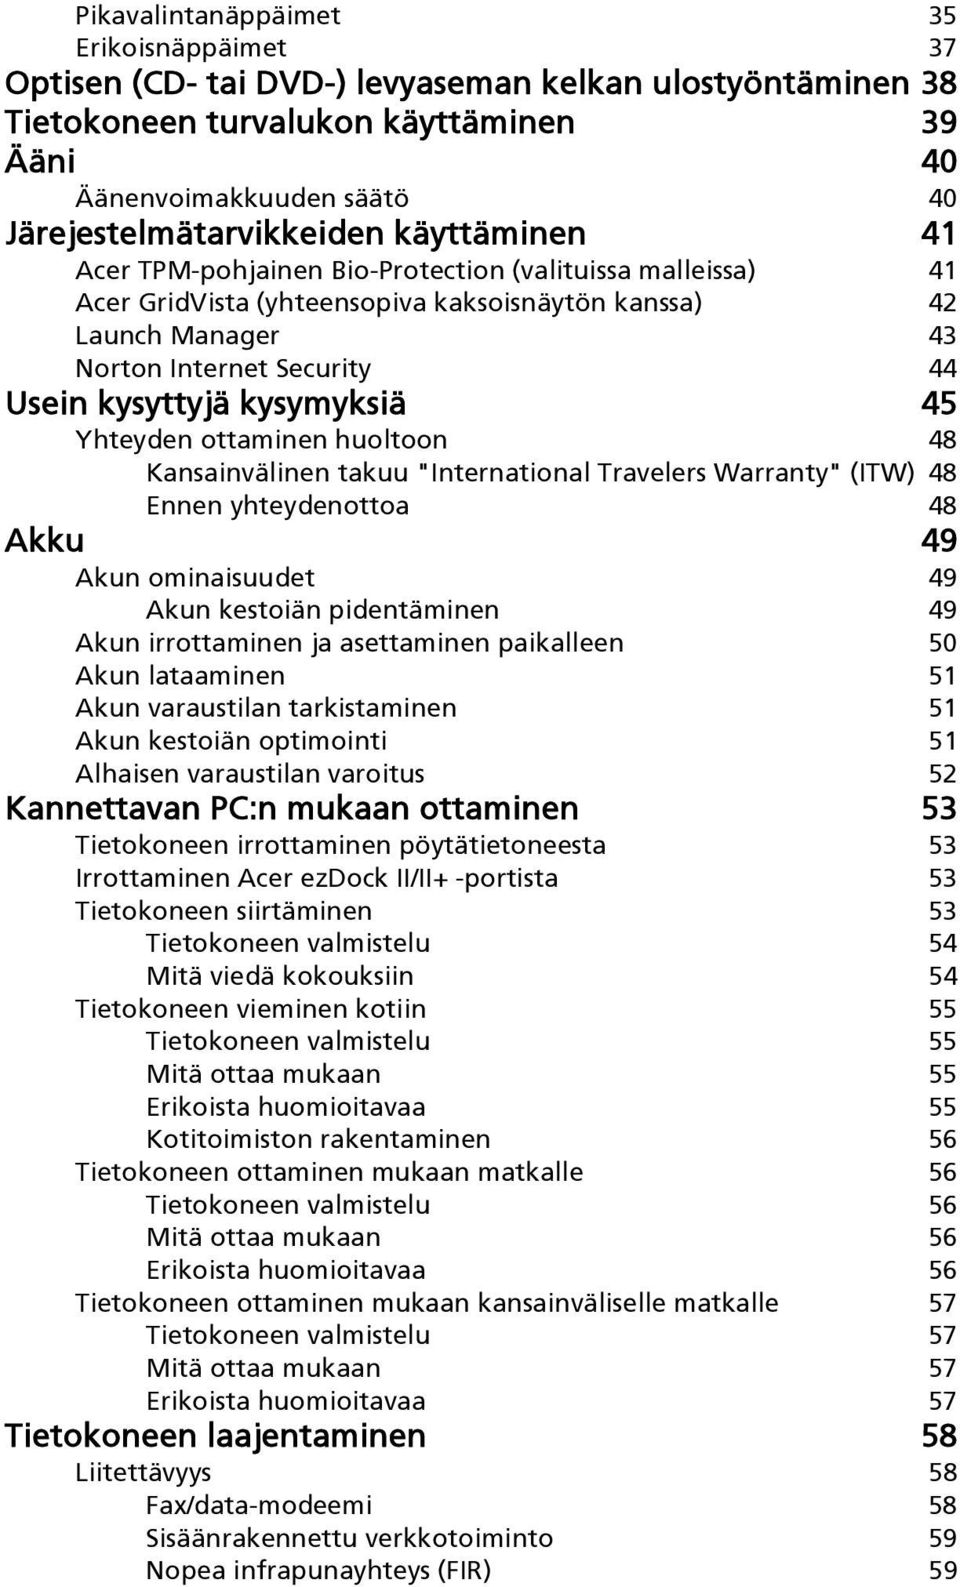 Usein kysyttyjä kysymyksiä 45 Yhteyden ottaminen huoltoon 48 Kansainvälinen takuu "International Travelers Warranty" (ITW) 48 Ennen yhteydenottoa 48 Akku 49 Akun ominaisuudet 49 Akun kestoiän